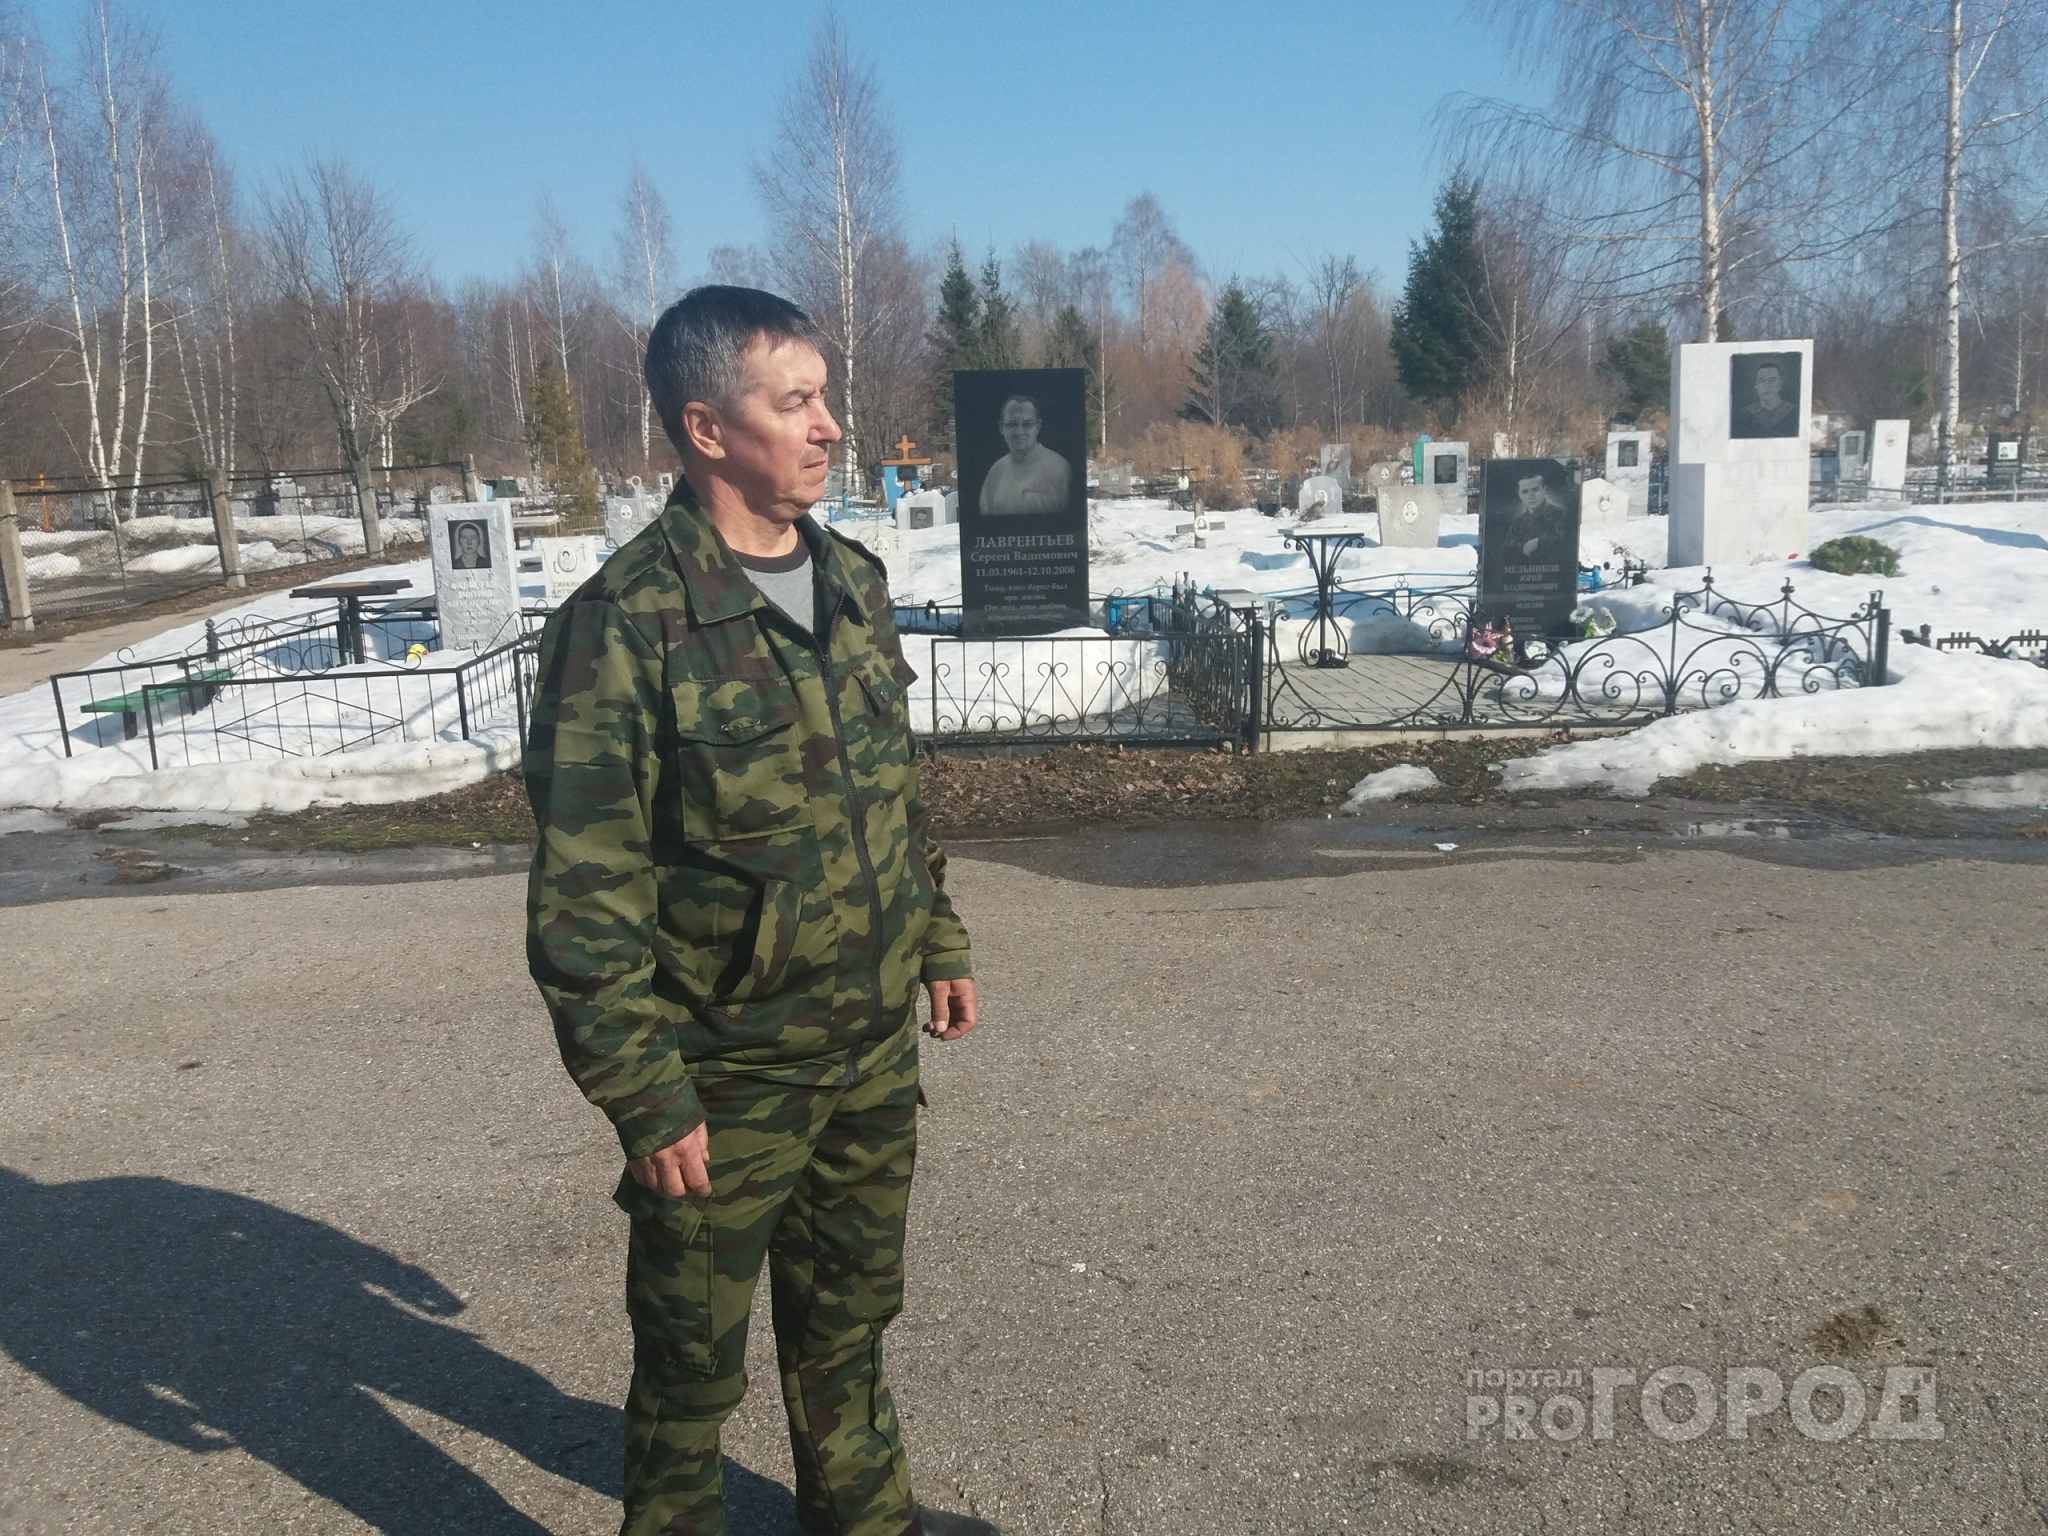 Охранник Карачуринского кладбища: "Раньше я служил в Вооруженных силах России"